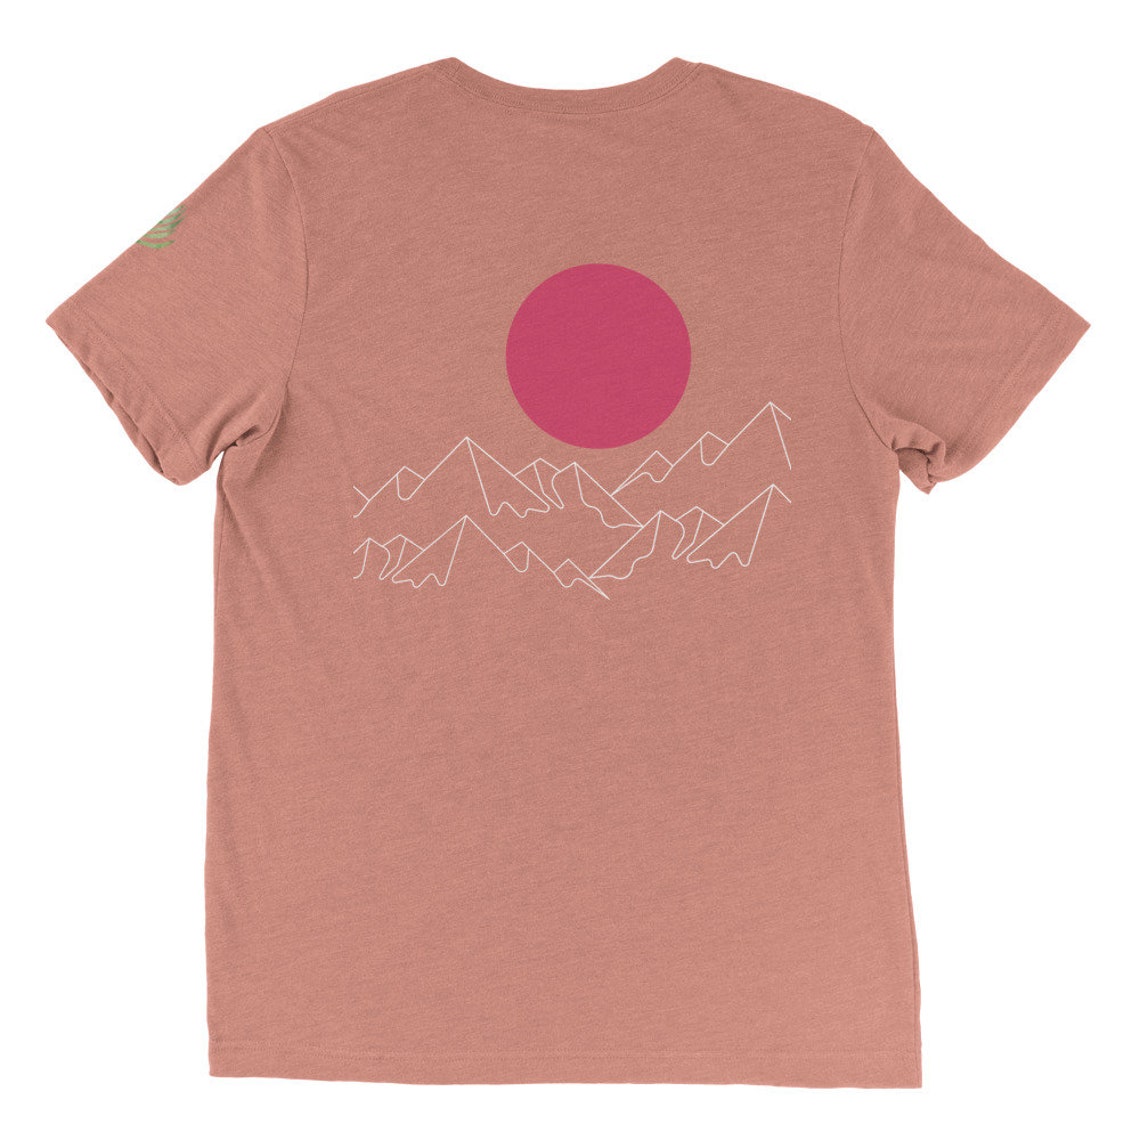 MOUNTAIN SUN T-Shirt/Mountain Life/Tee/Sun/Outdoors Short | Etsy